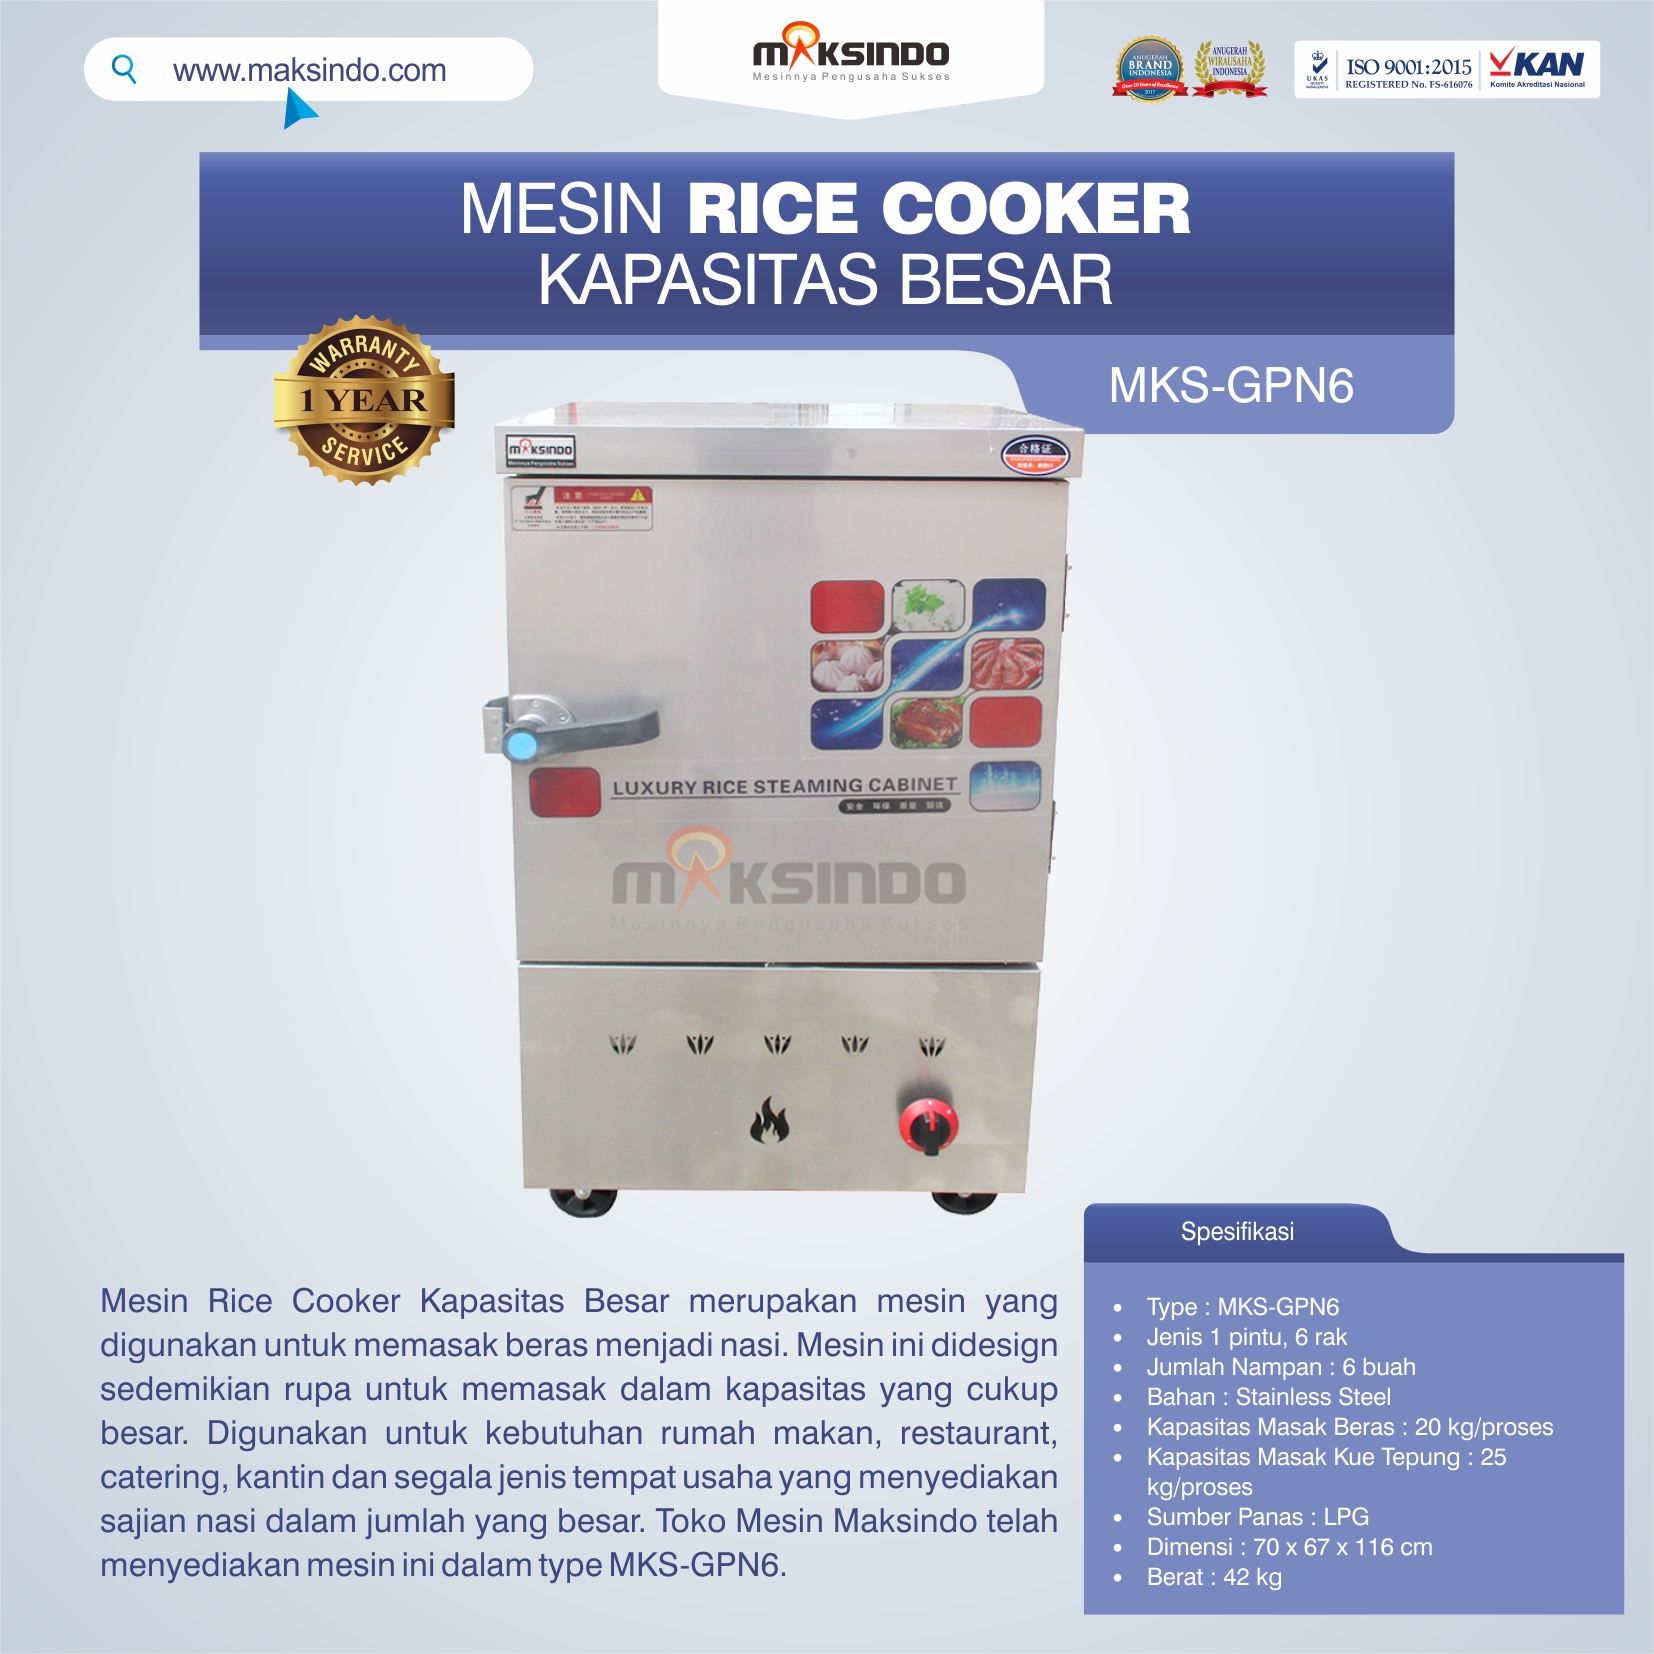 Jual Mesin Rice Cooker Kapasitas Besar MKS-GPN6 di Yogyakarta